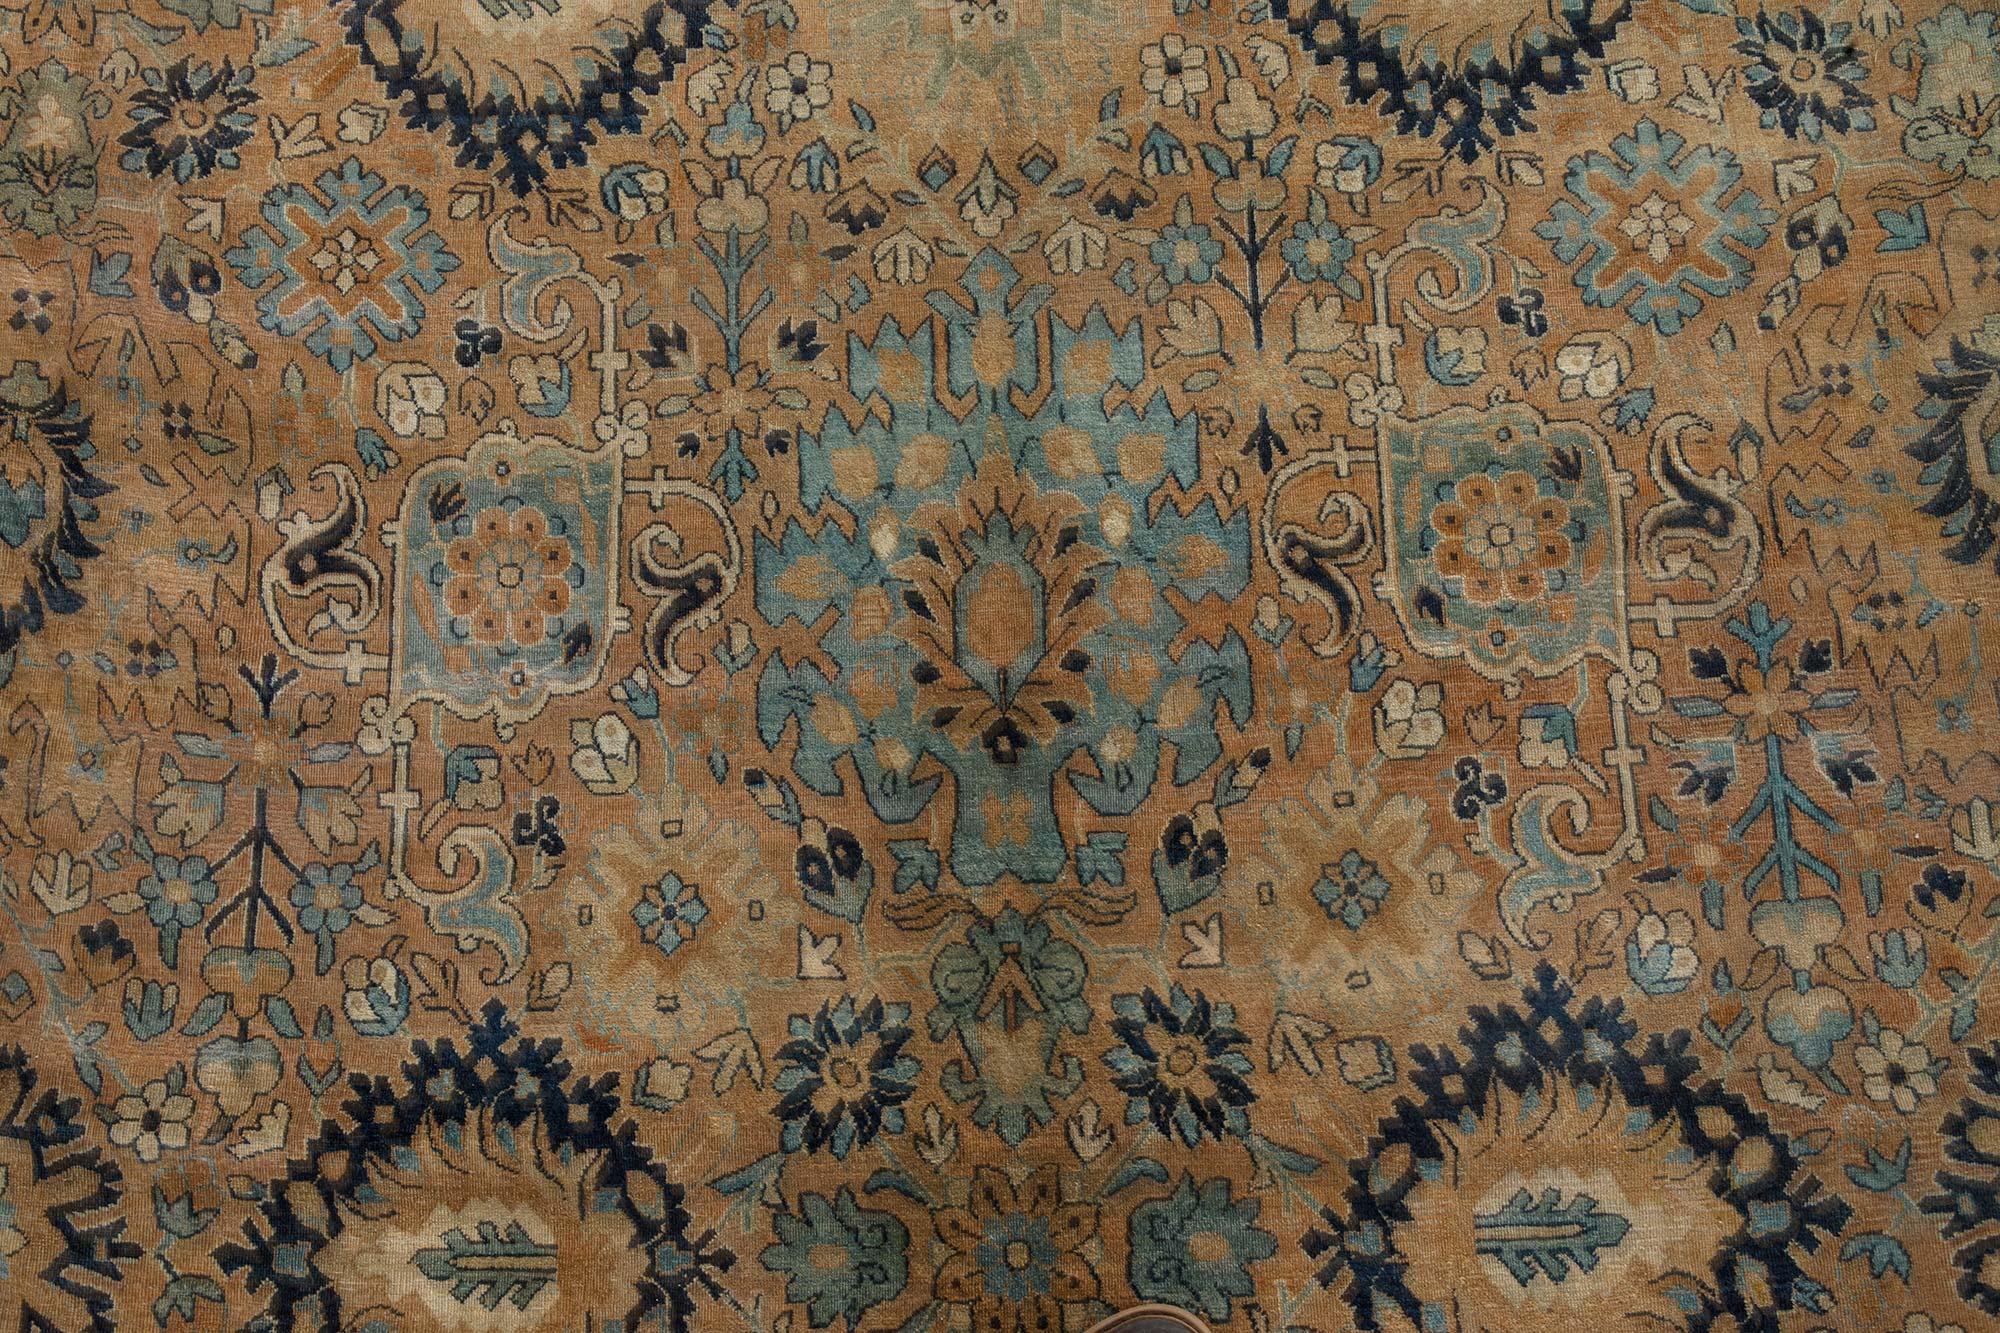 Antique Botanic Persian Kirman handmade wool carpet
Size: 12'4